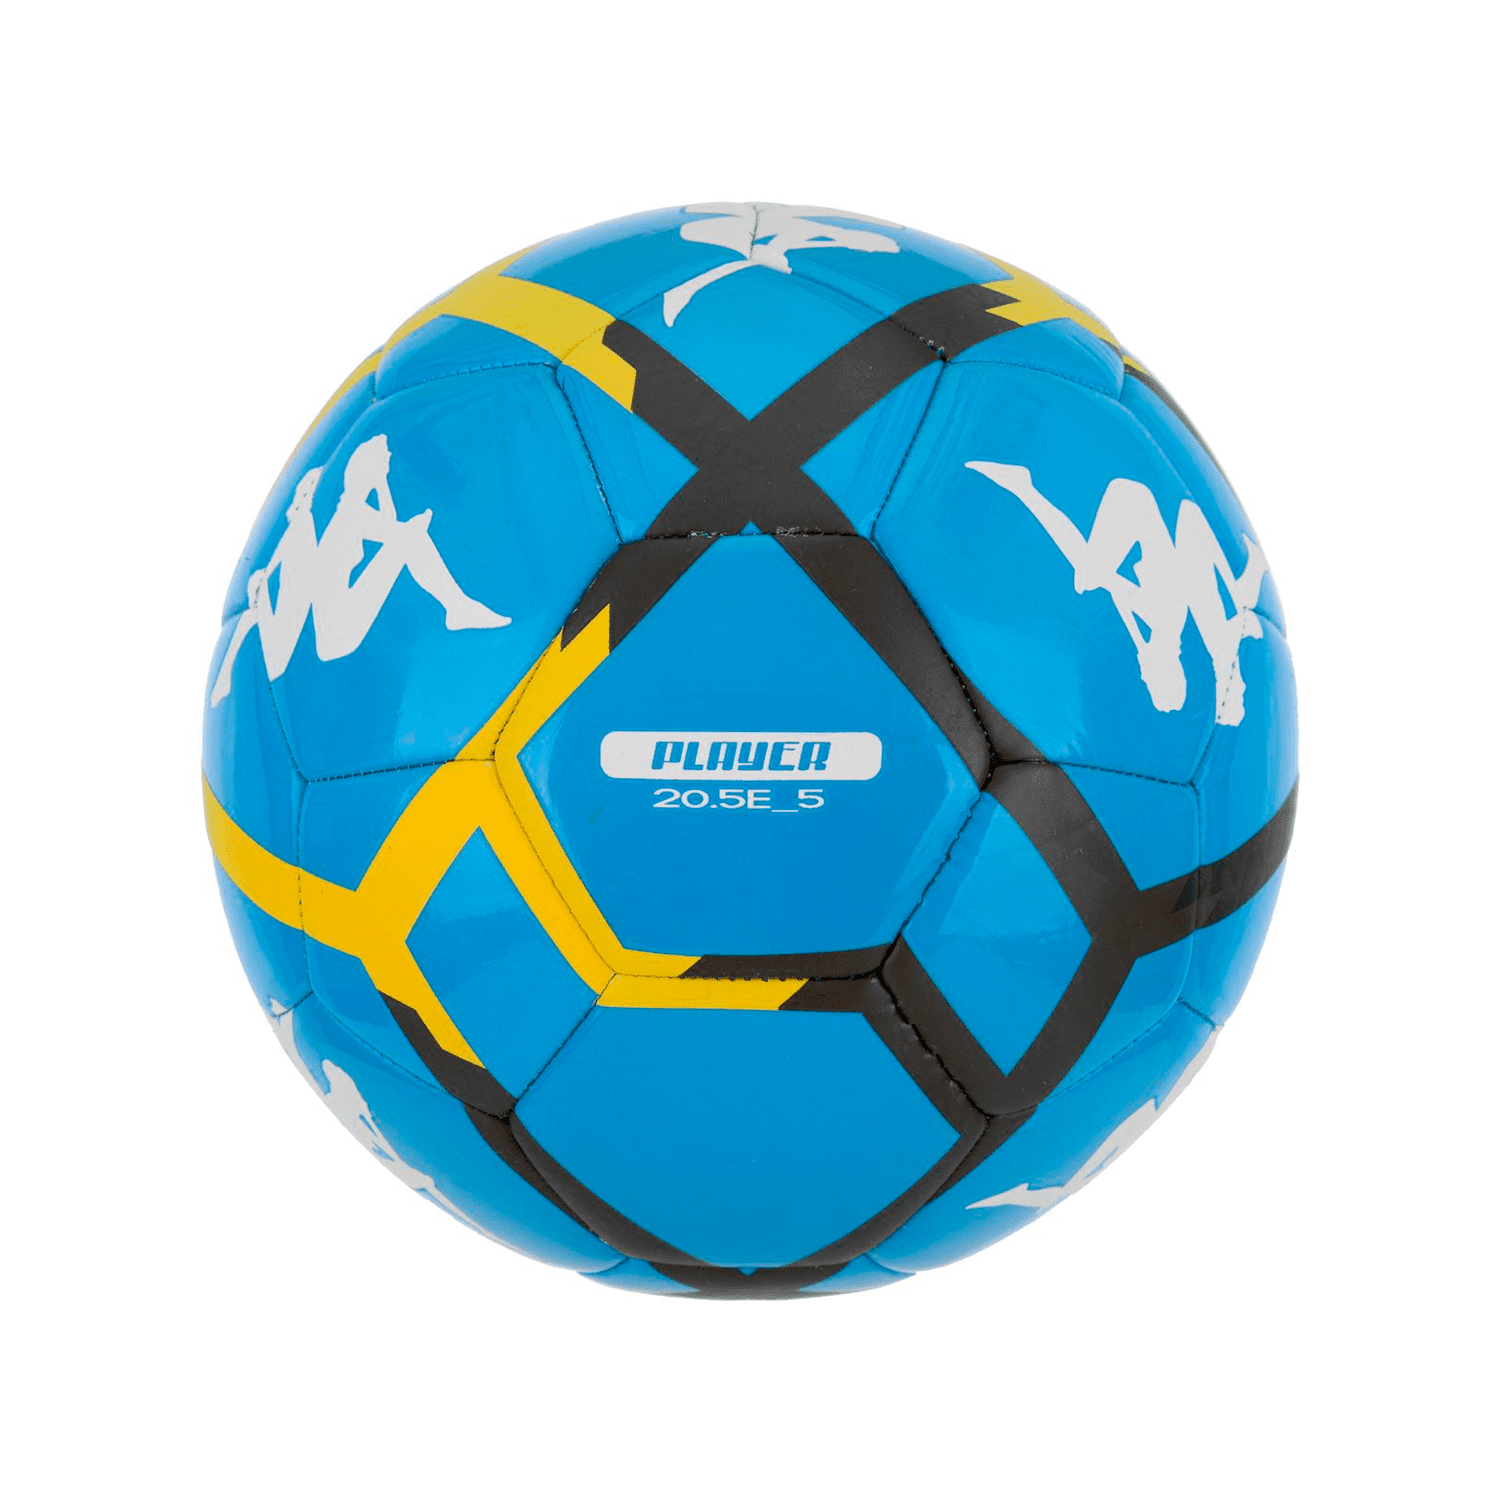  Seleccione Paquete de 10 Balones de Fútbol Brillant Super V22  Blanco/Gris/Azul Talla 5 FIFA : Deportes y Actividades al Aire Libre